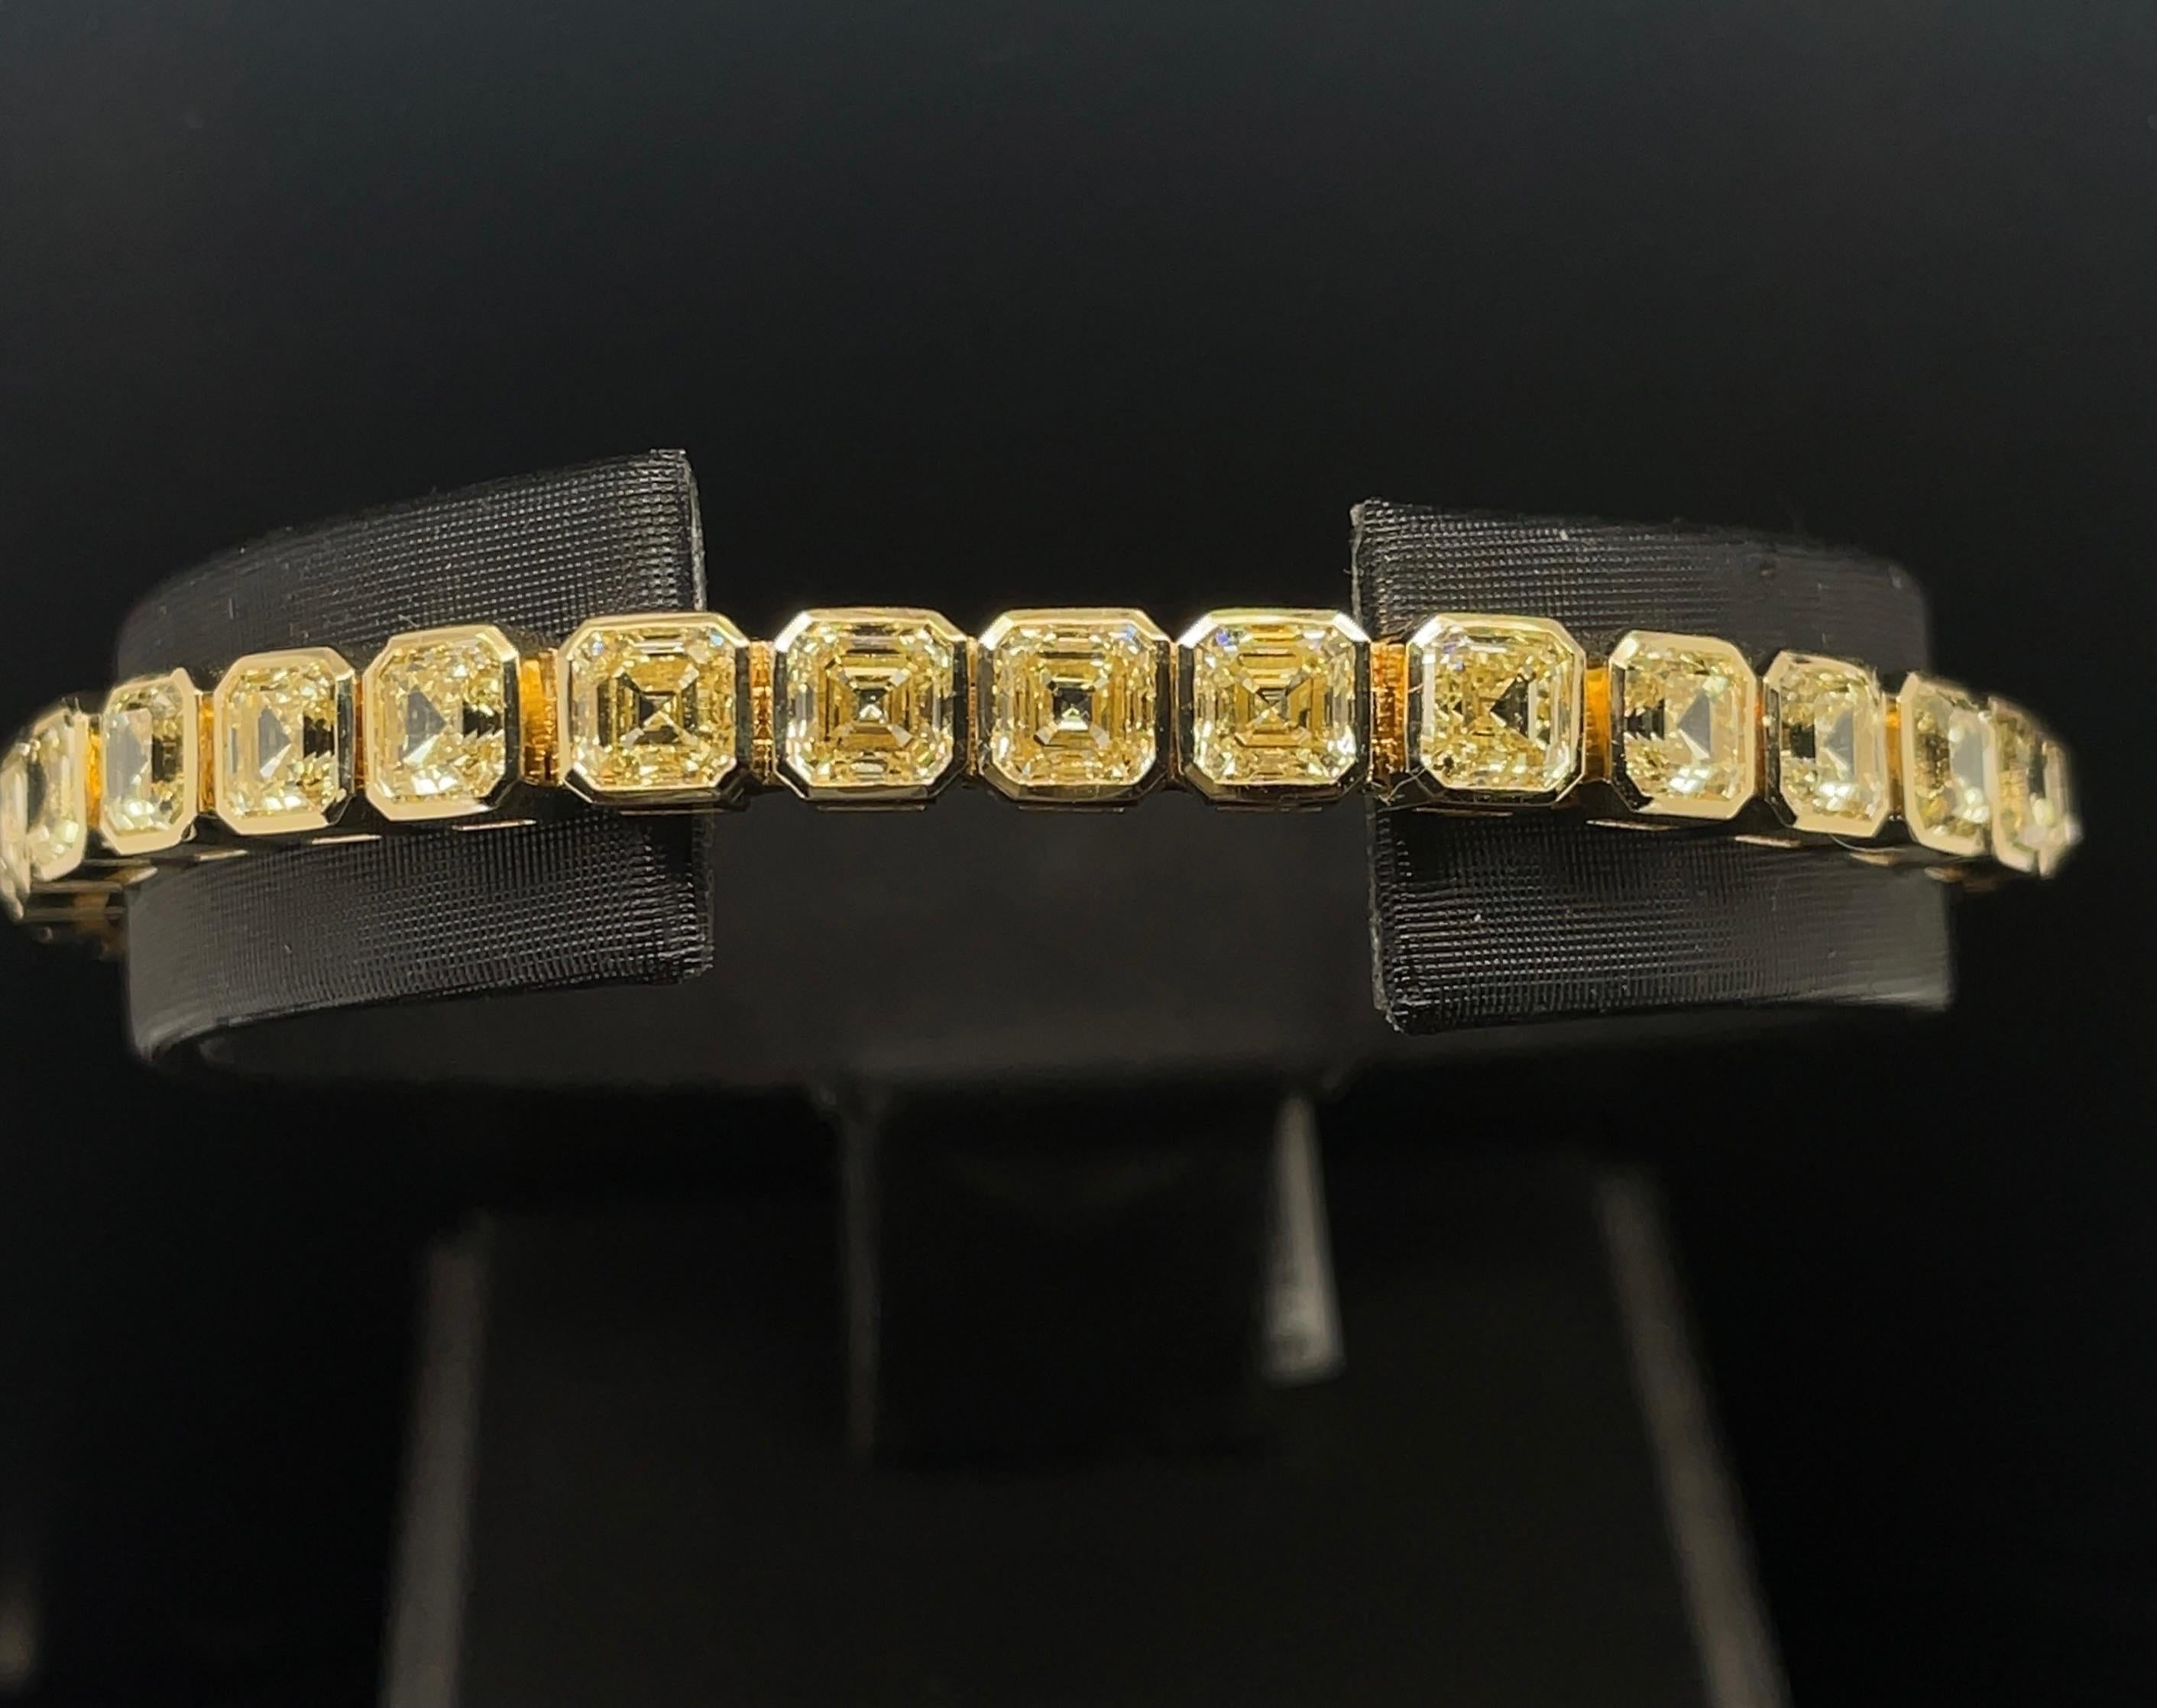 19.56cttw Asscher Cut Fancy Yellow diamond bracelet set in 18KYG